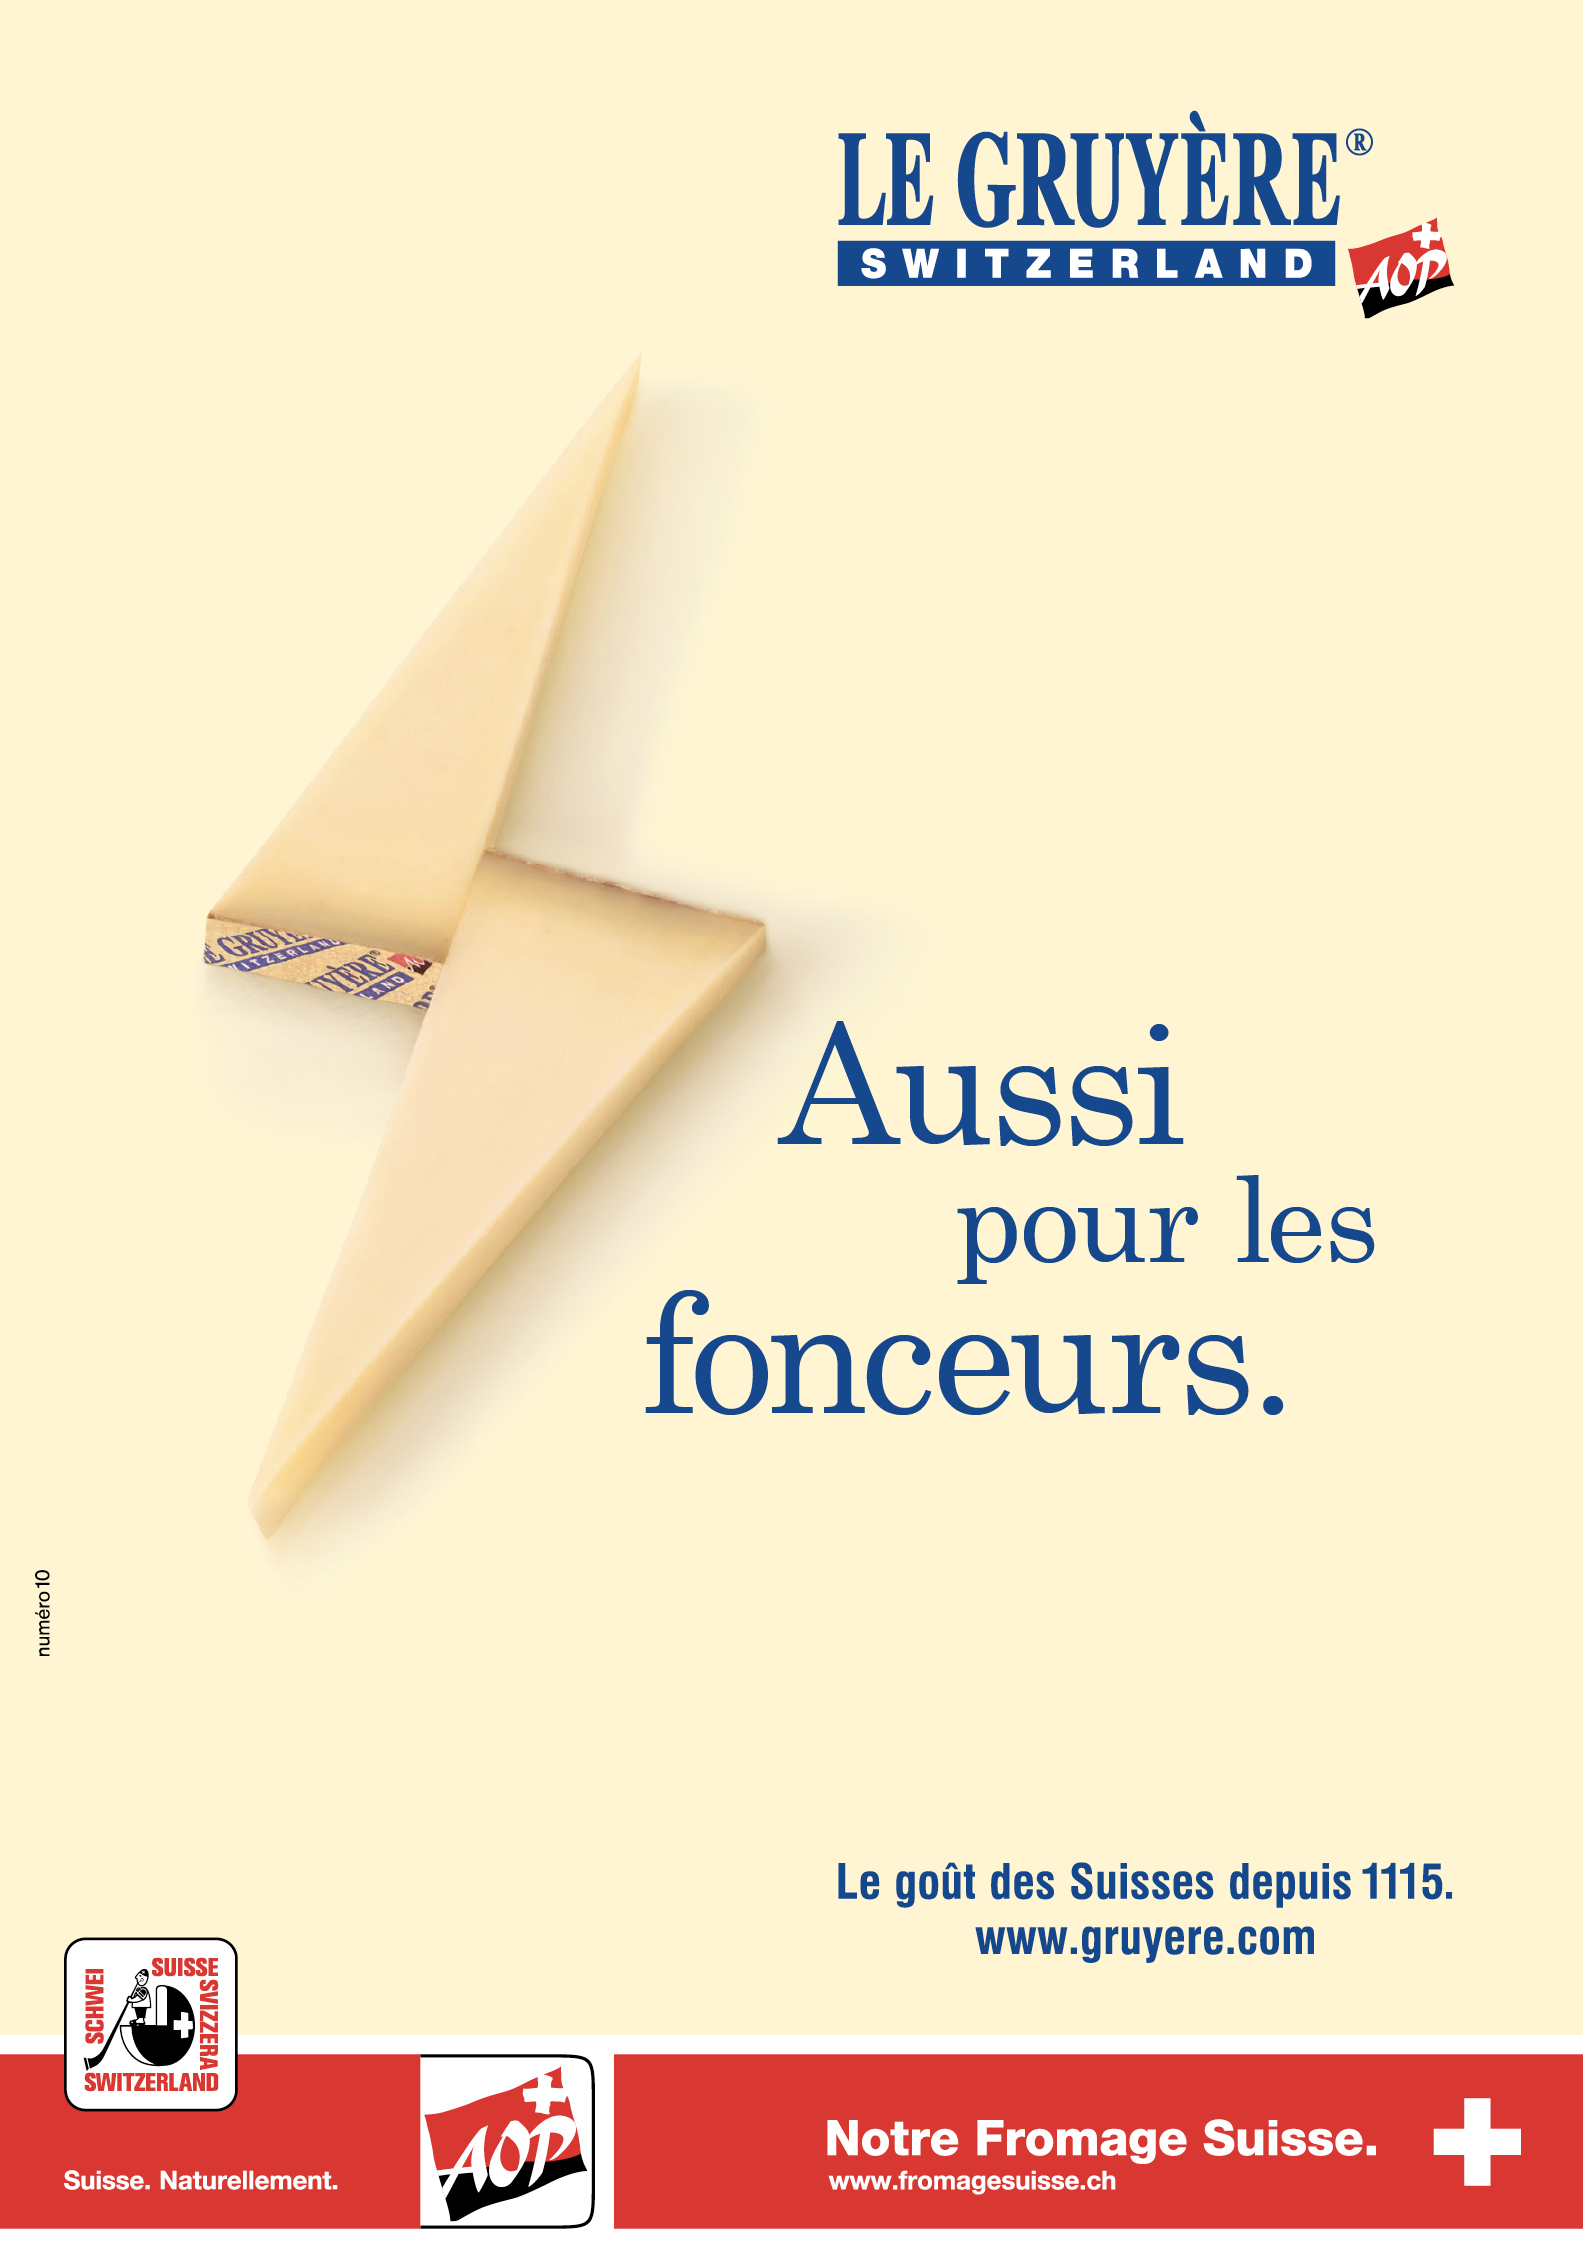 Campagne d'affichage du Gruyère AOP, réalisée par l’agence de communication bilingue Numéro10.